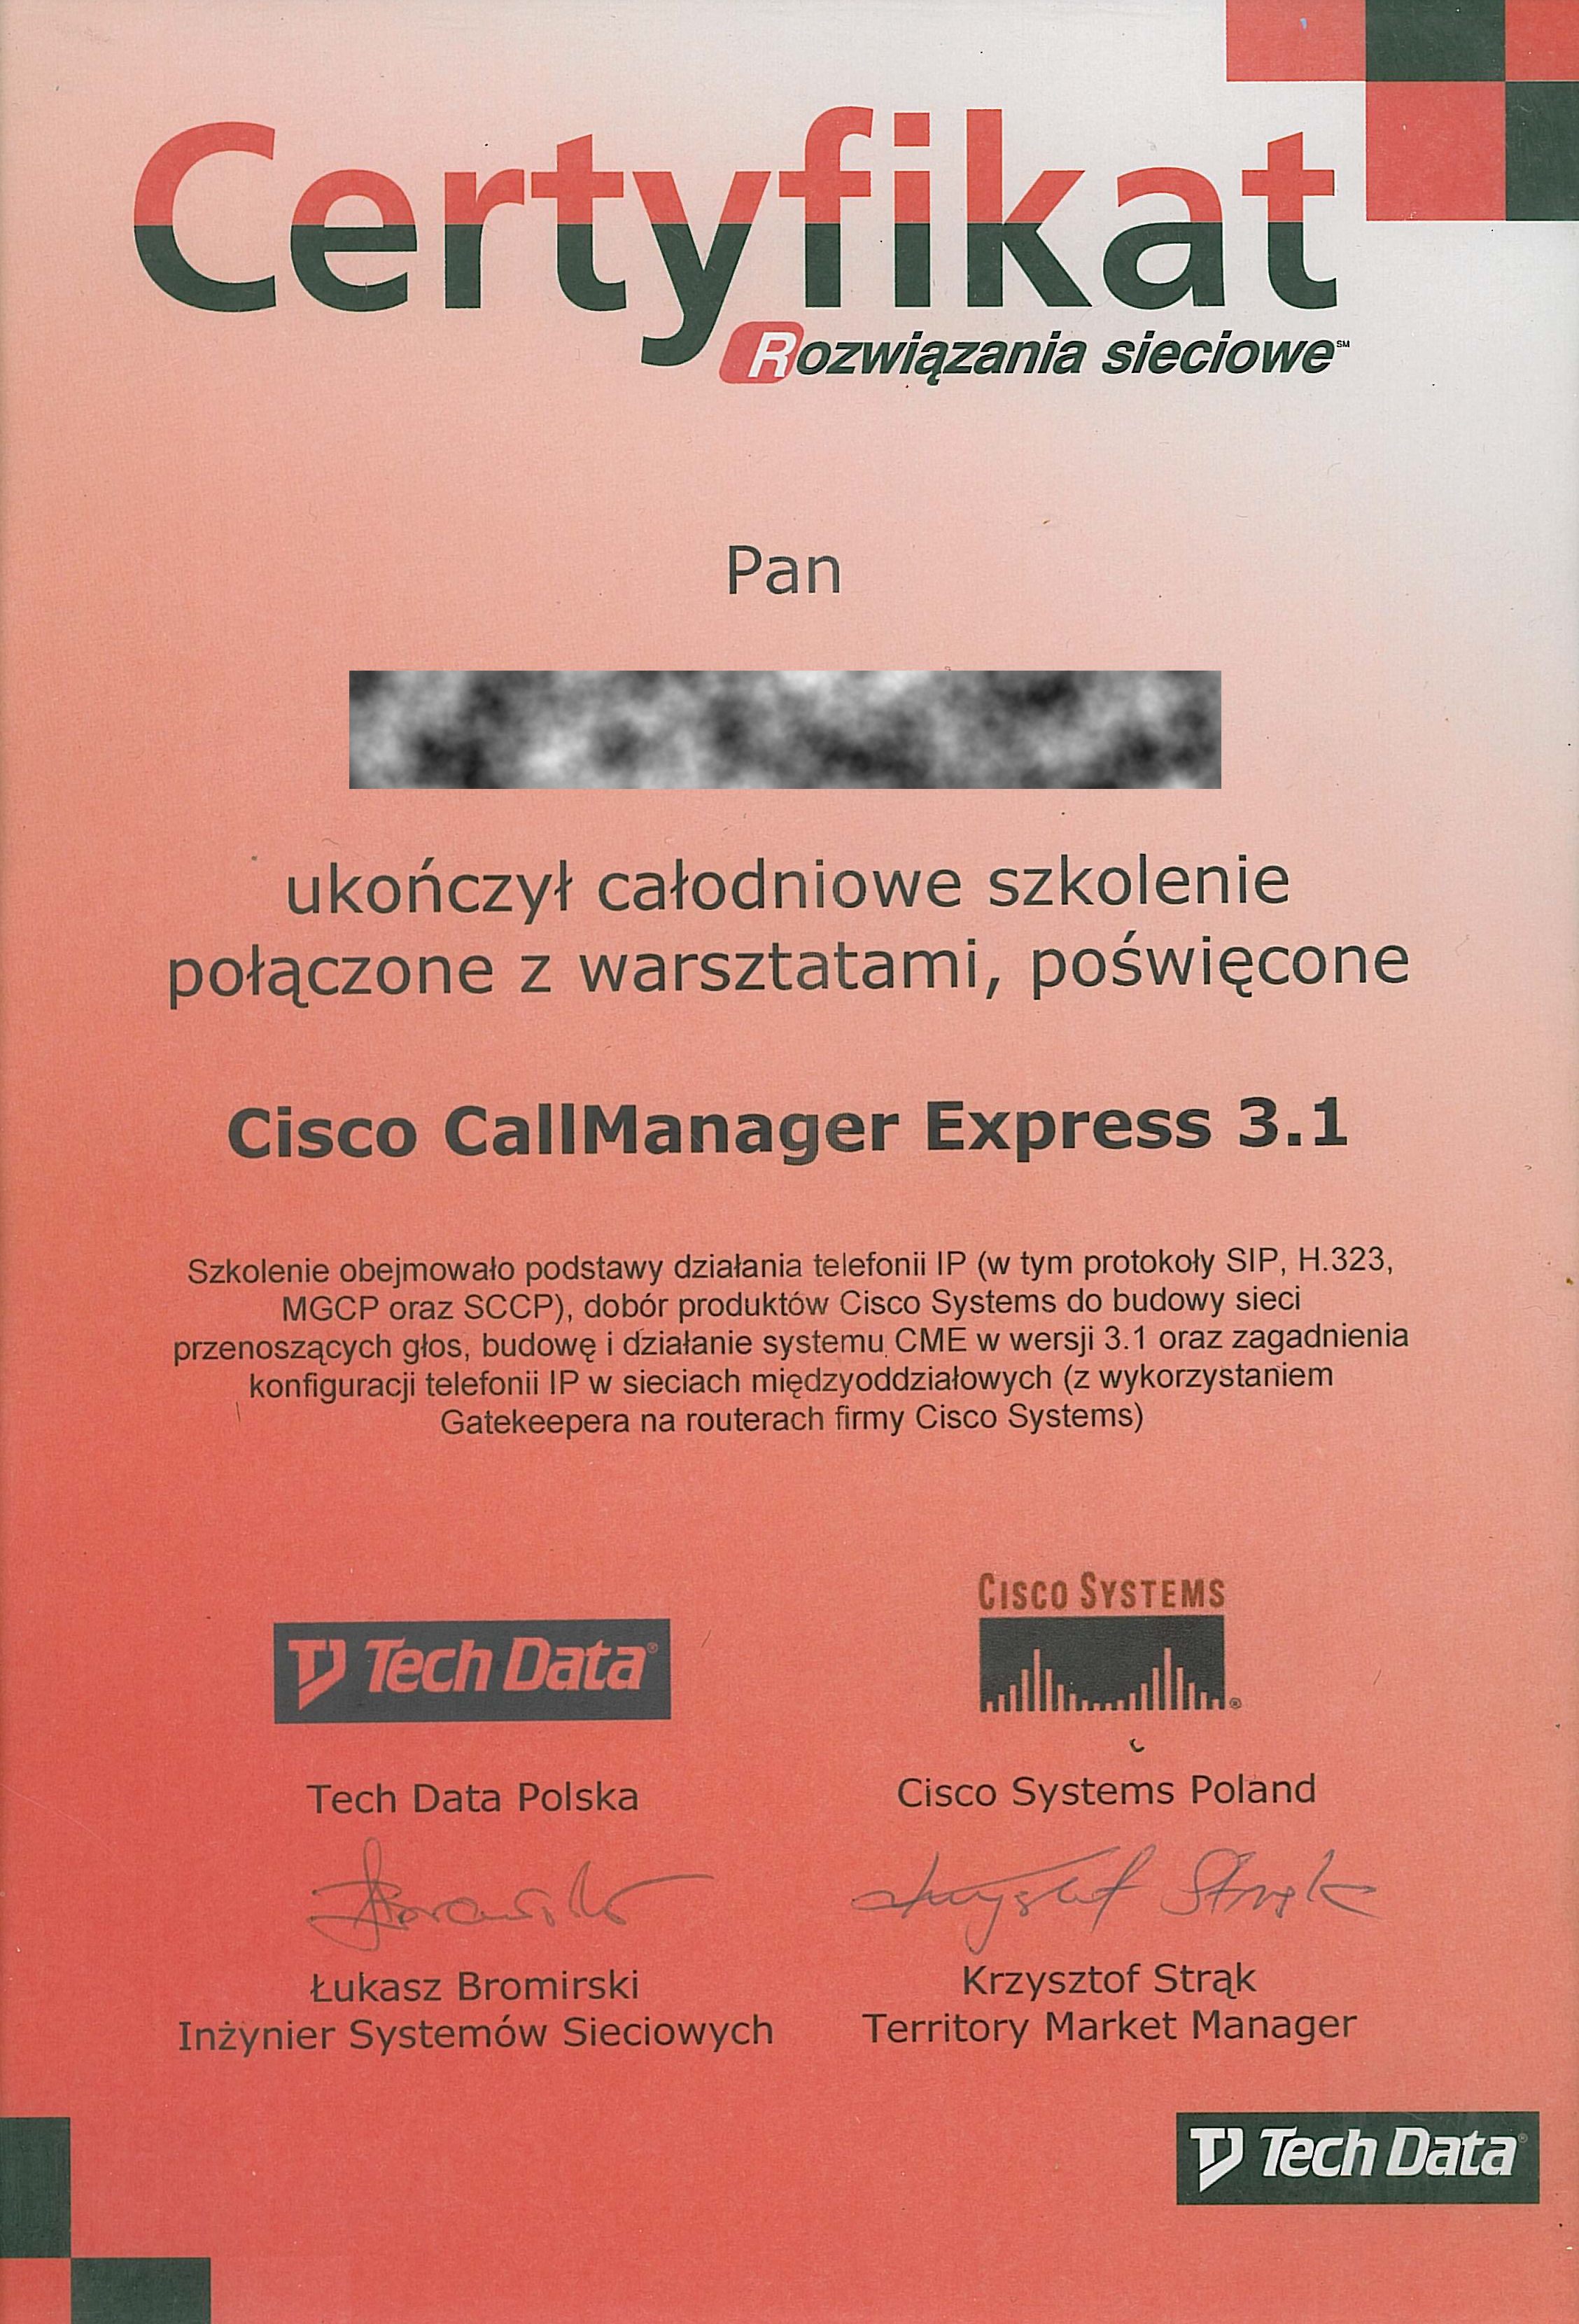 cisco_pm_callmanager_express_3_1_RODO